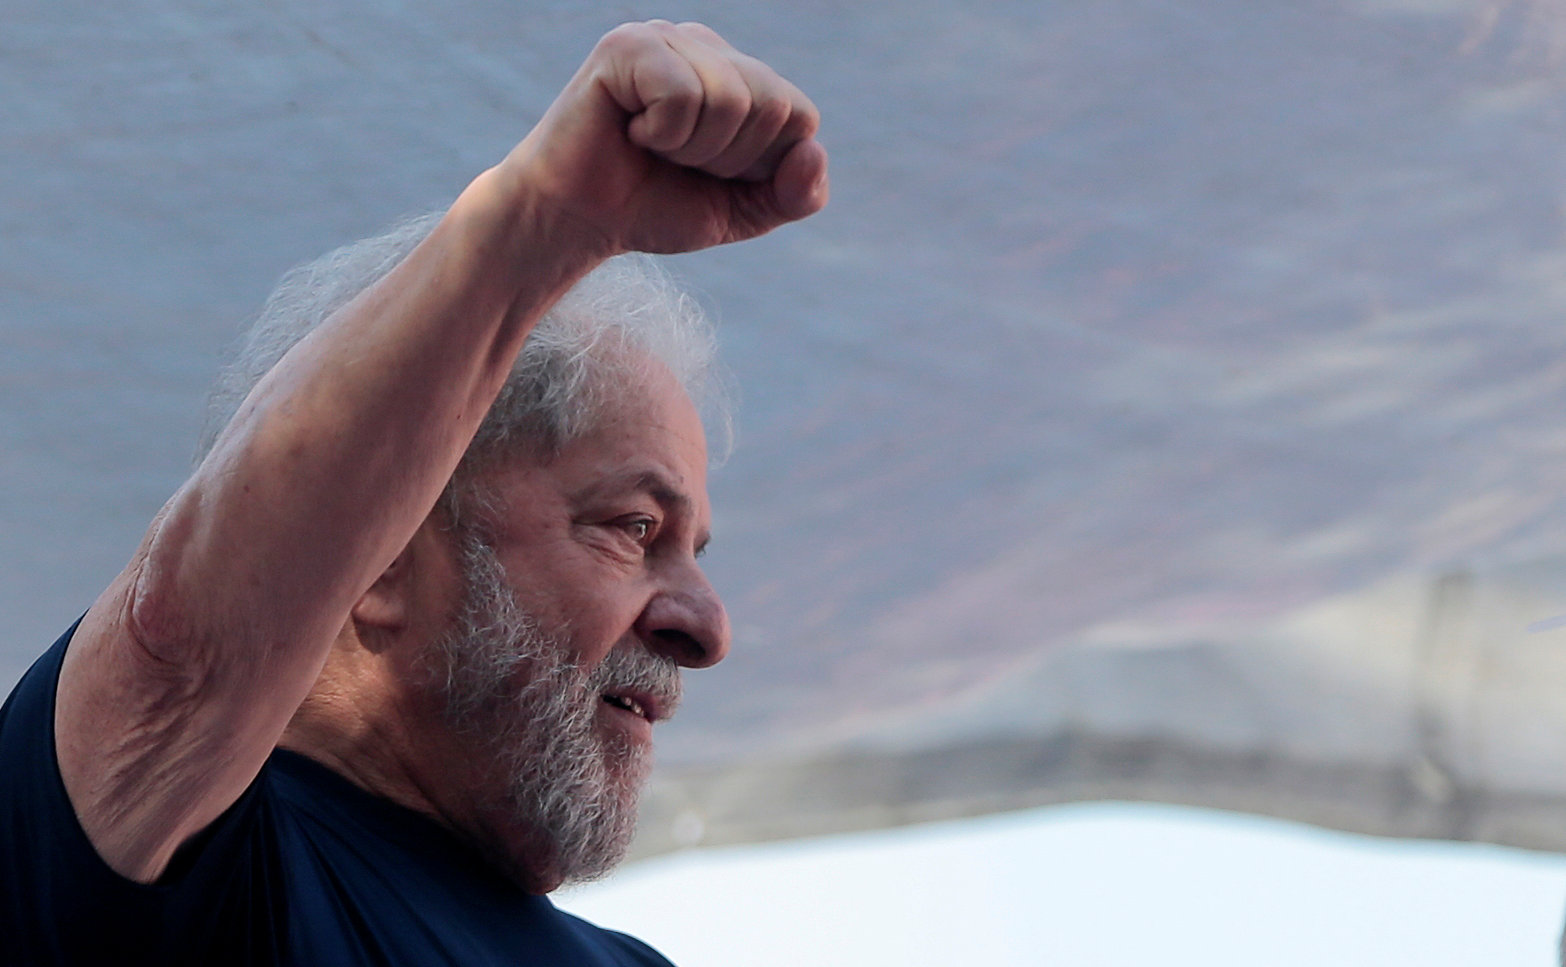 El expresidente de Brasil, Luiz Inácio Lula da Silva, se consideró a sí mismo como un preso político y denunció su persecución política.